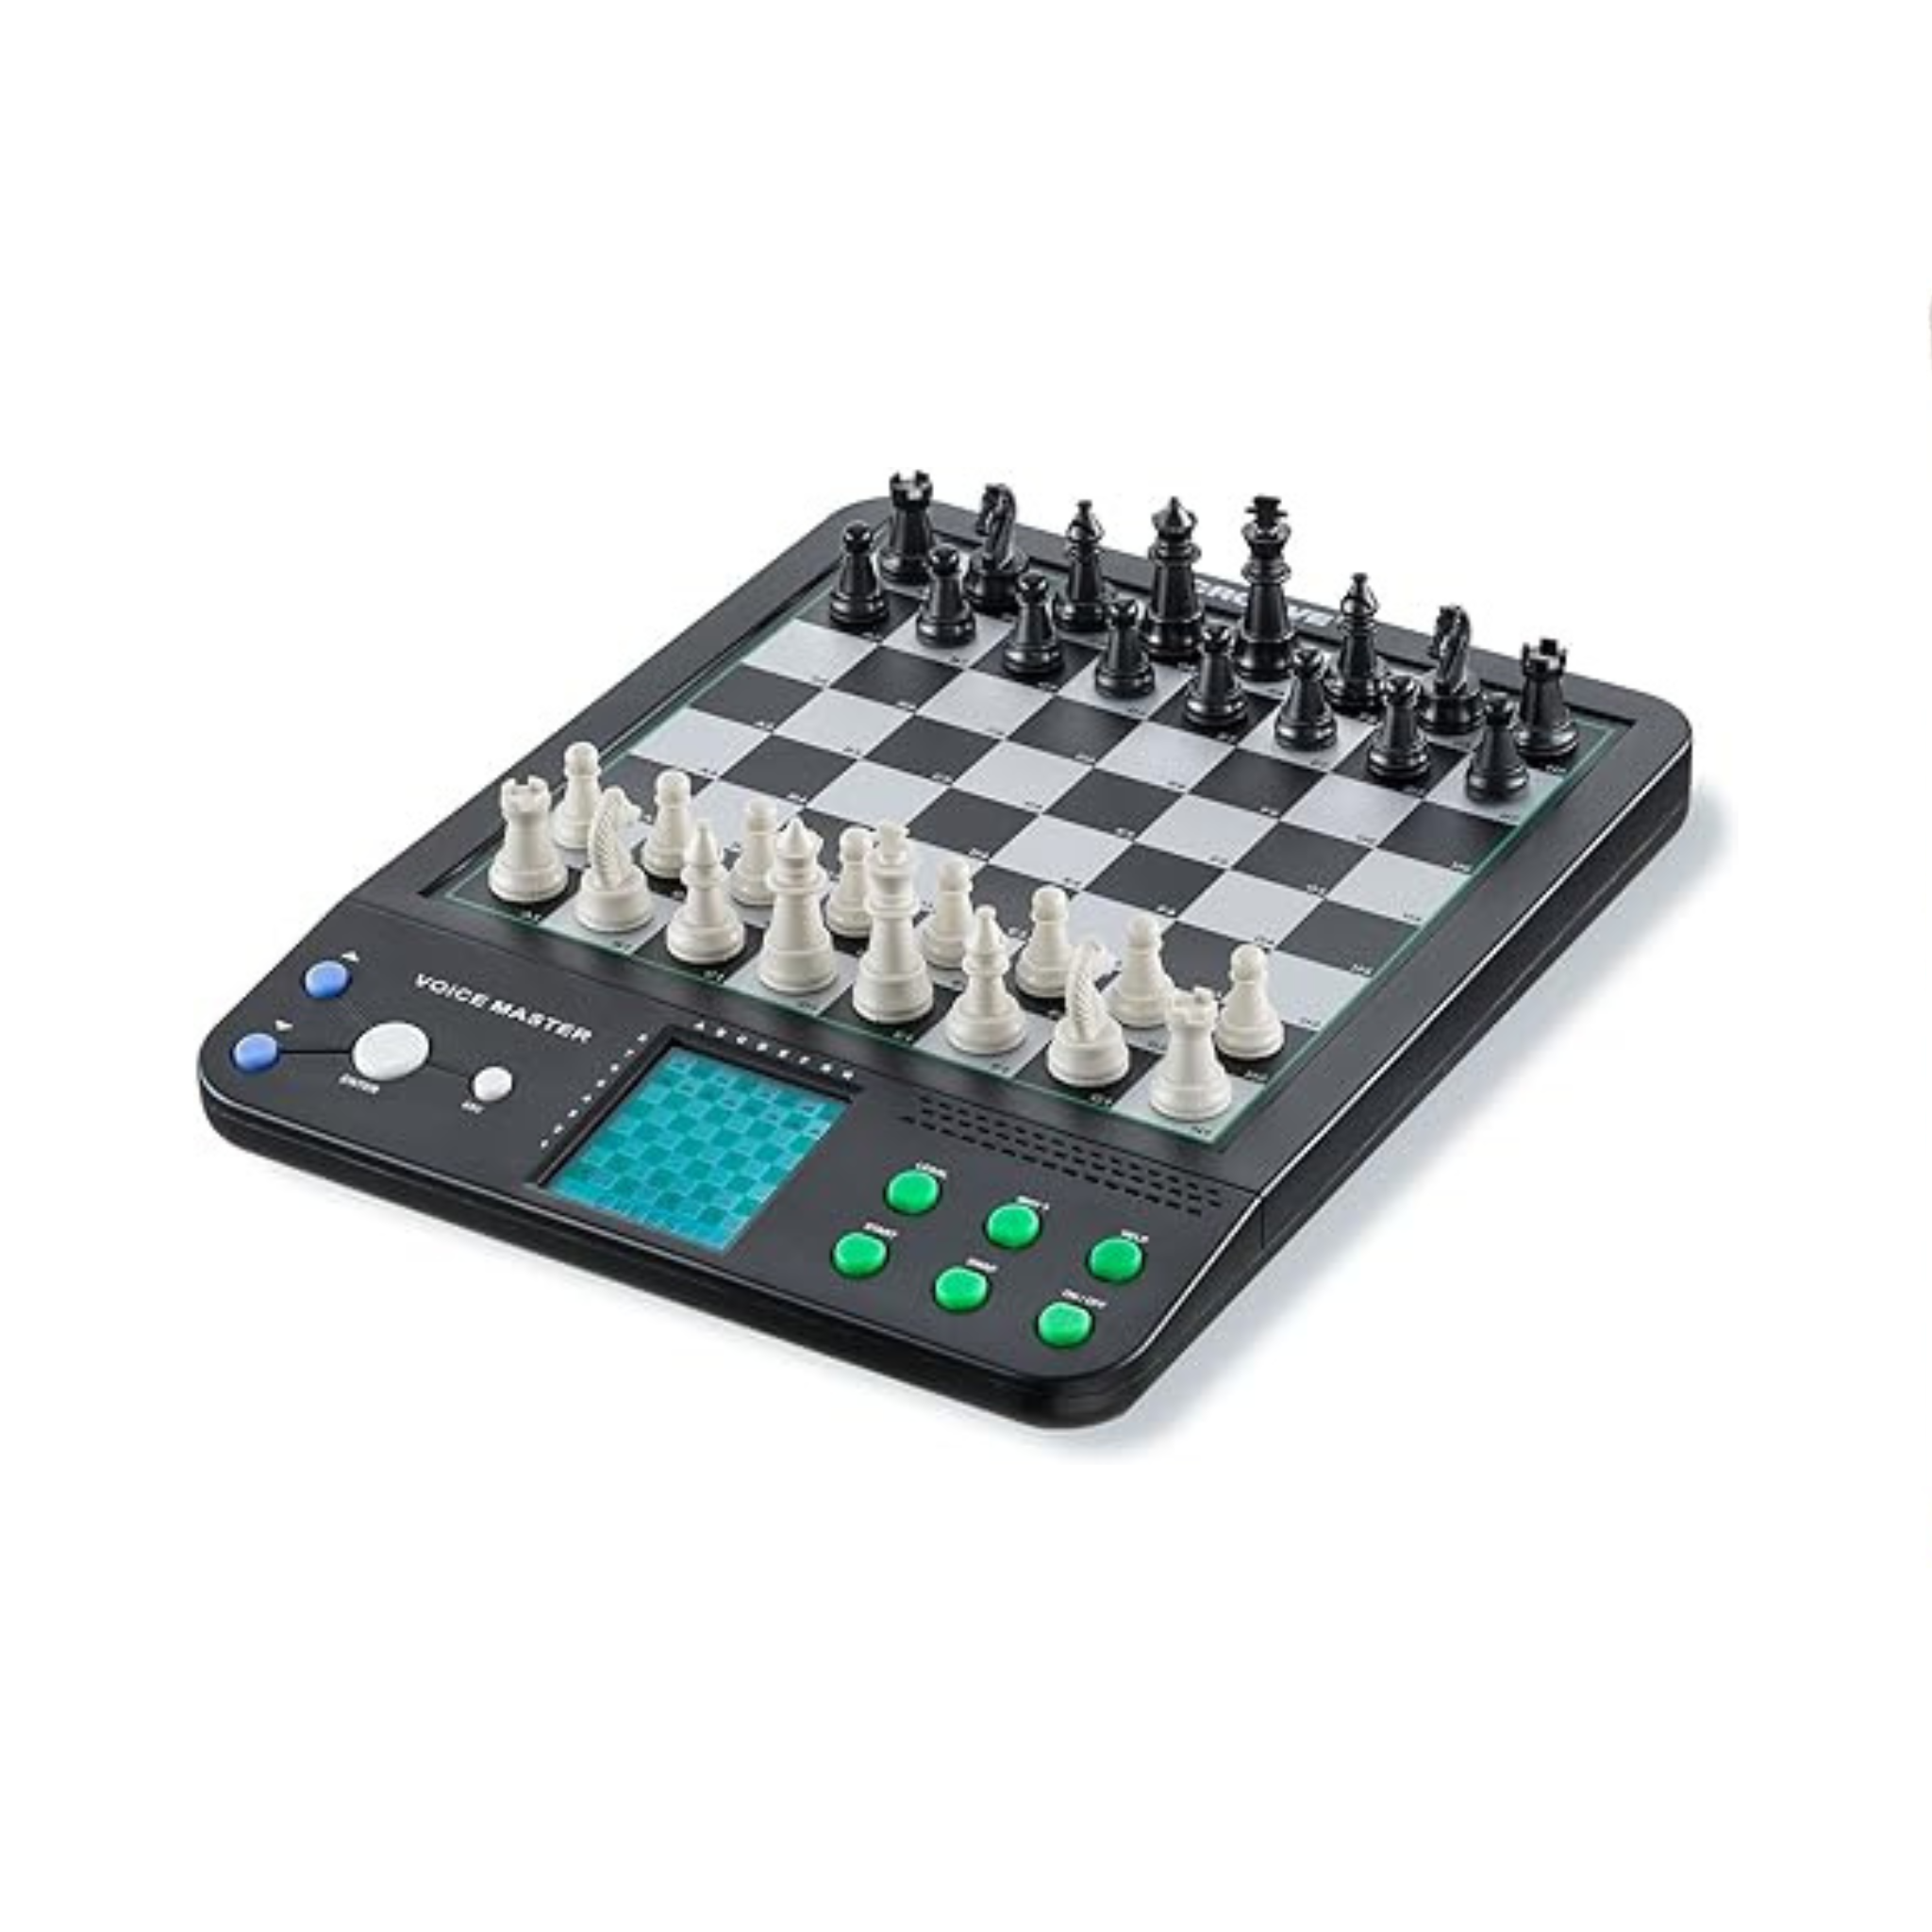 Juego de ajedrez y damas electrónico Croove 8 en 1